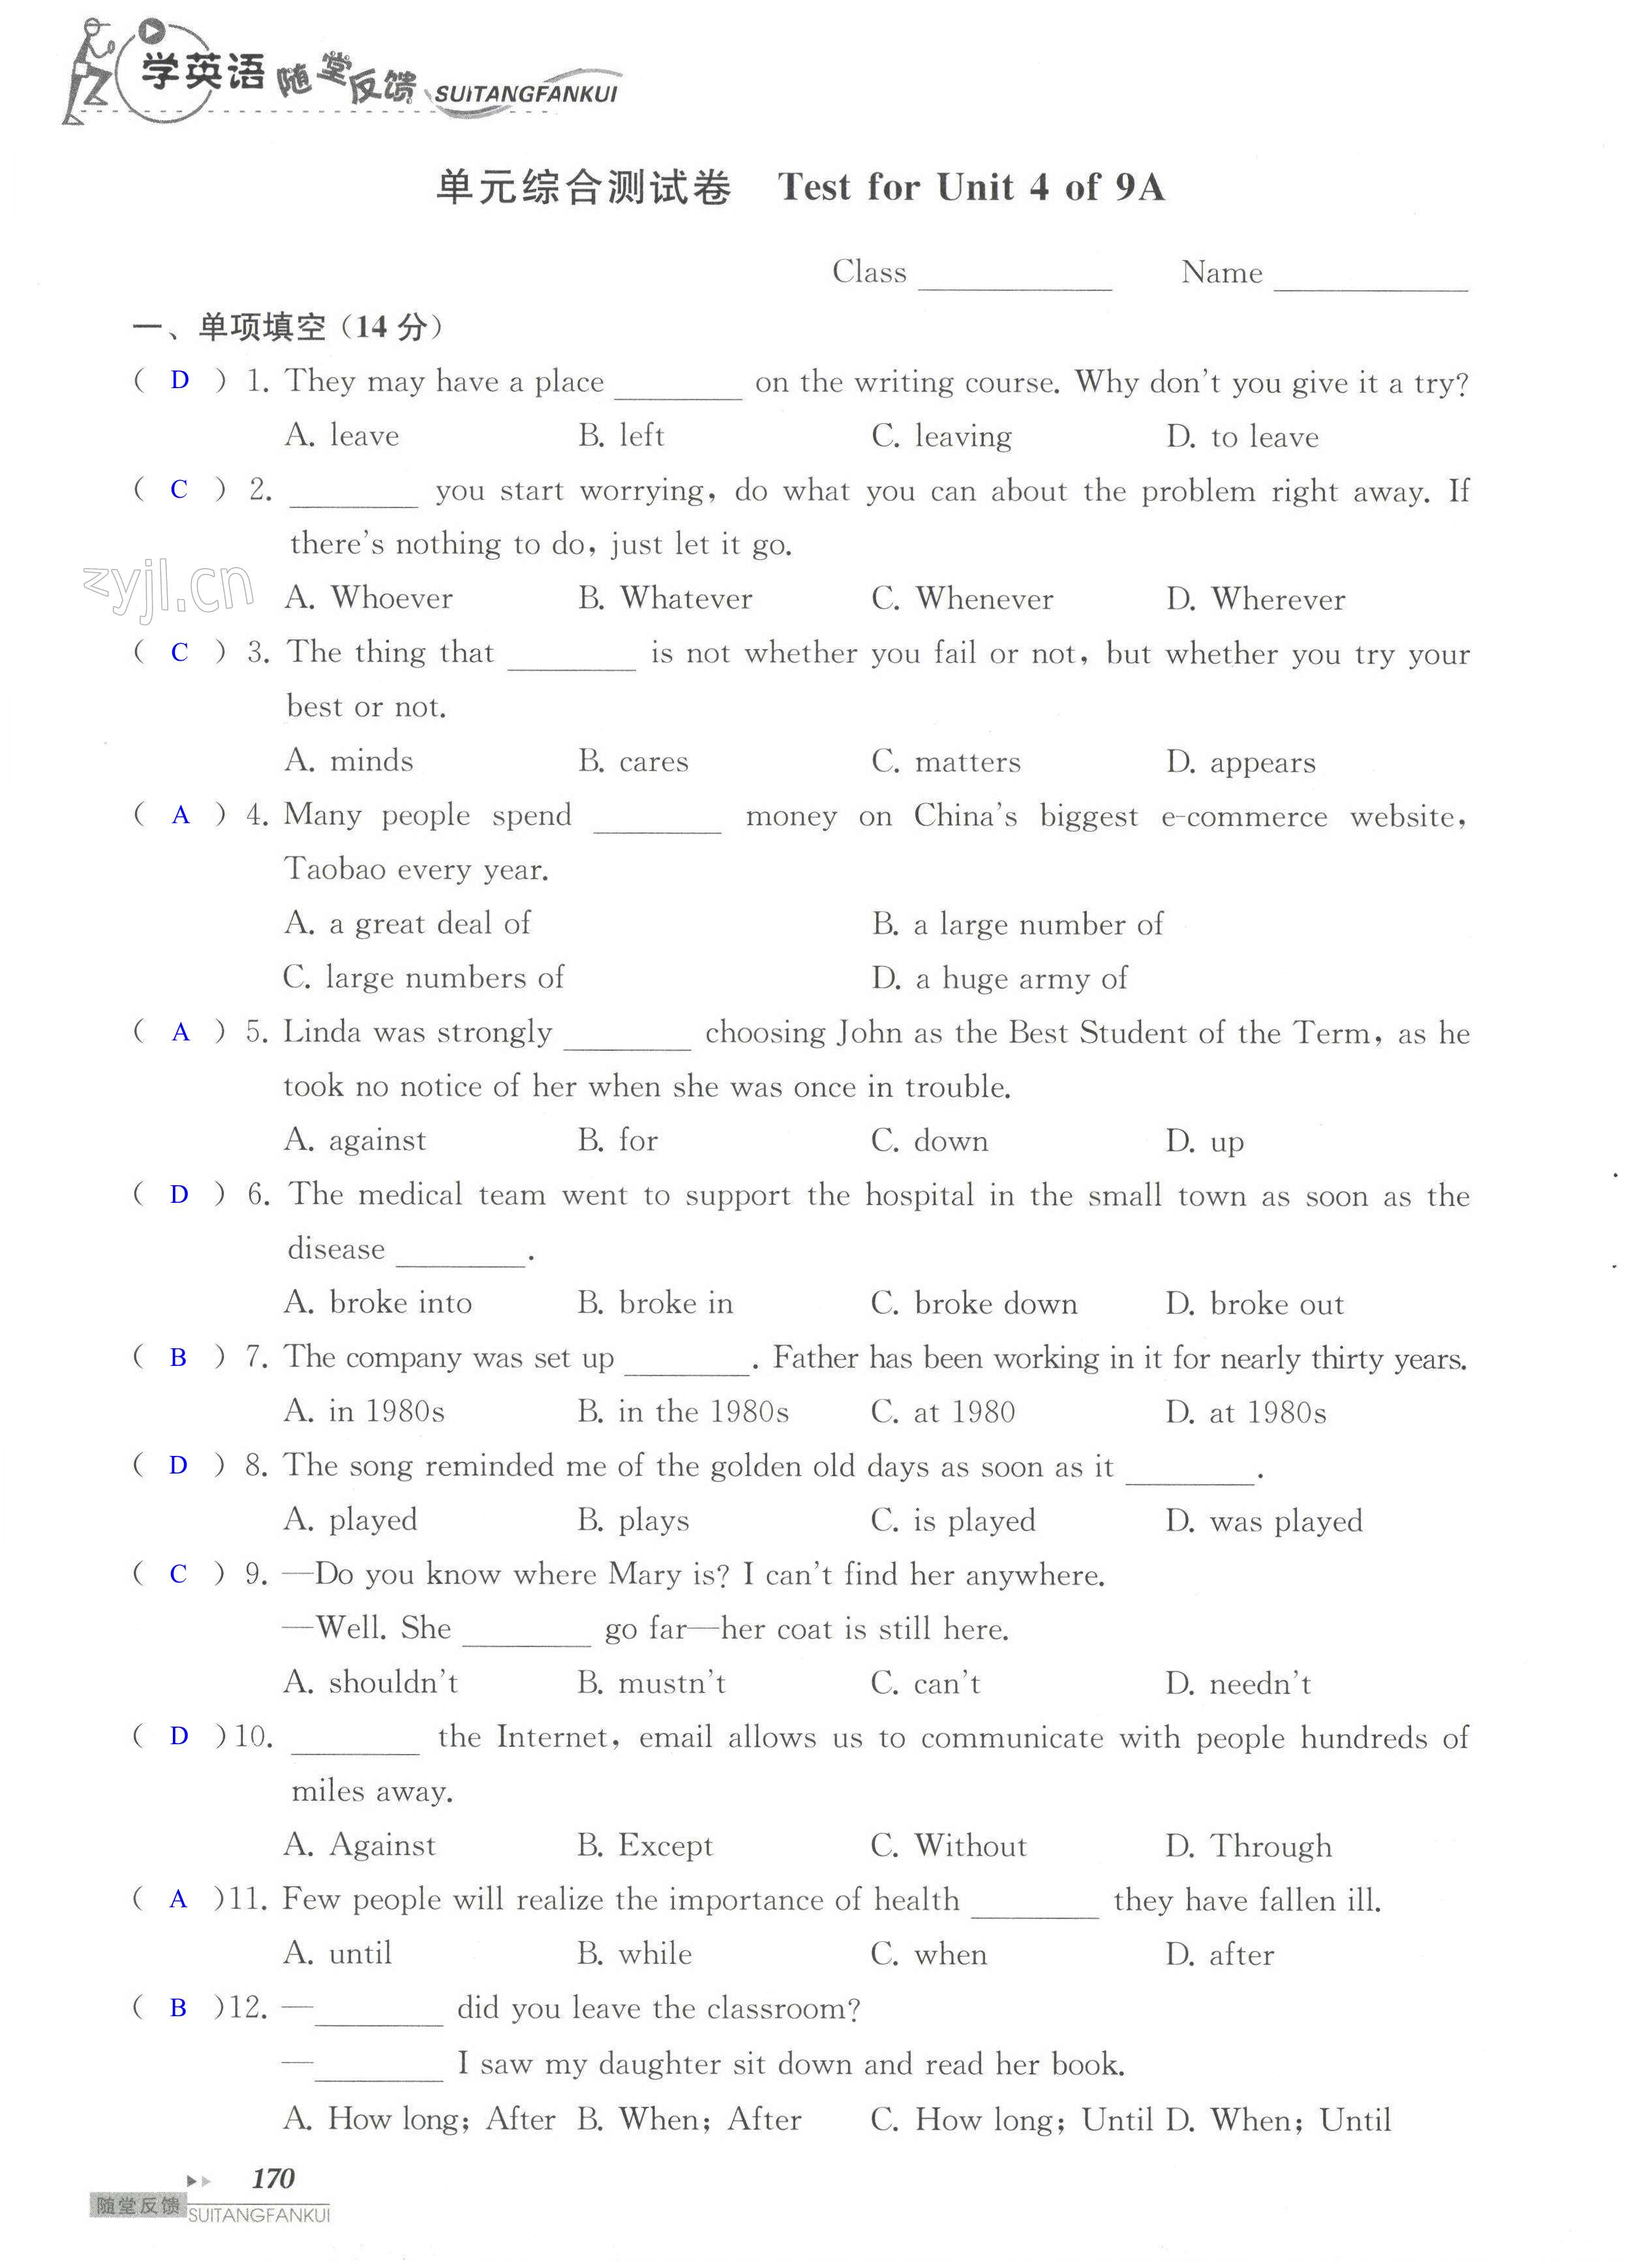 单元综合测试卷 Test for Unit 4 of 9A - 第170页